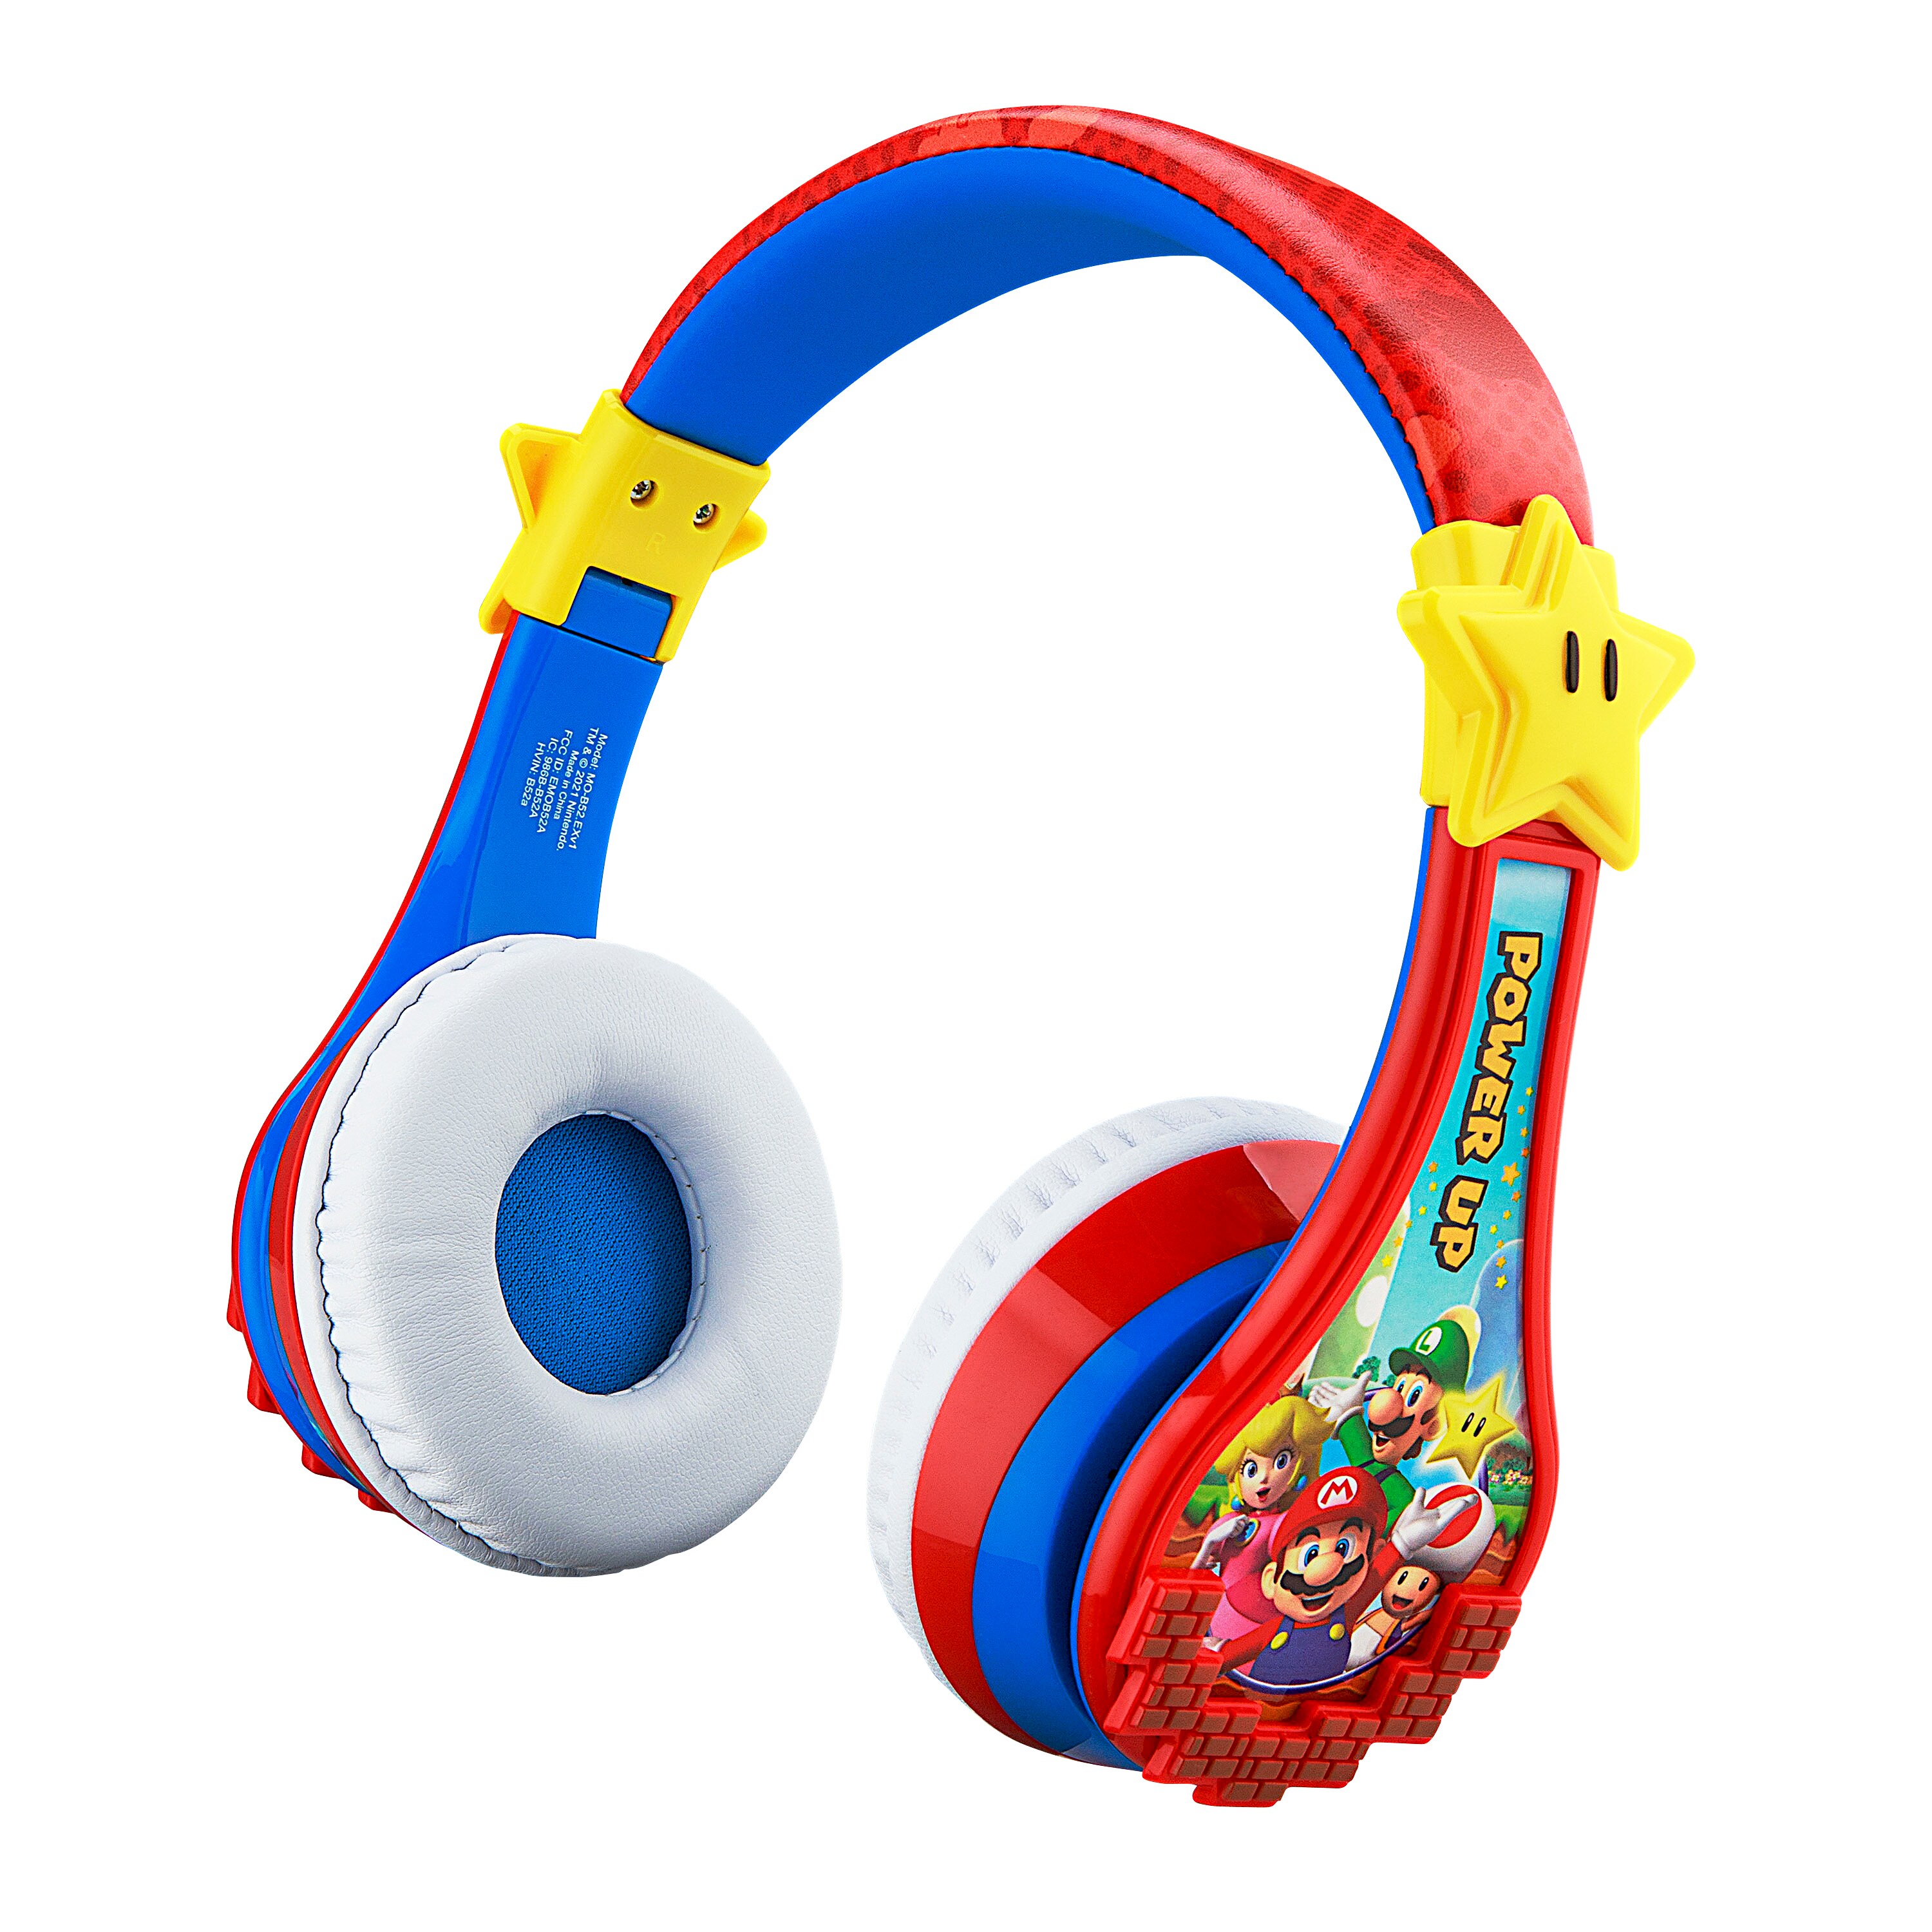 eKids Super Mario Over The Ear Wireless Headphones in the